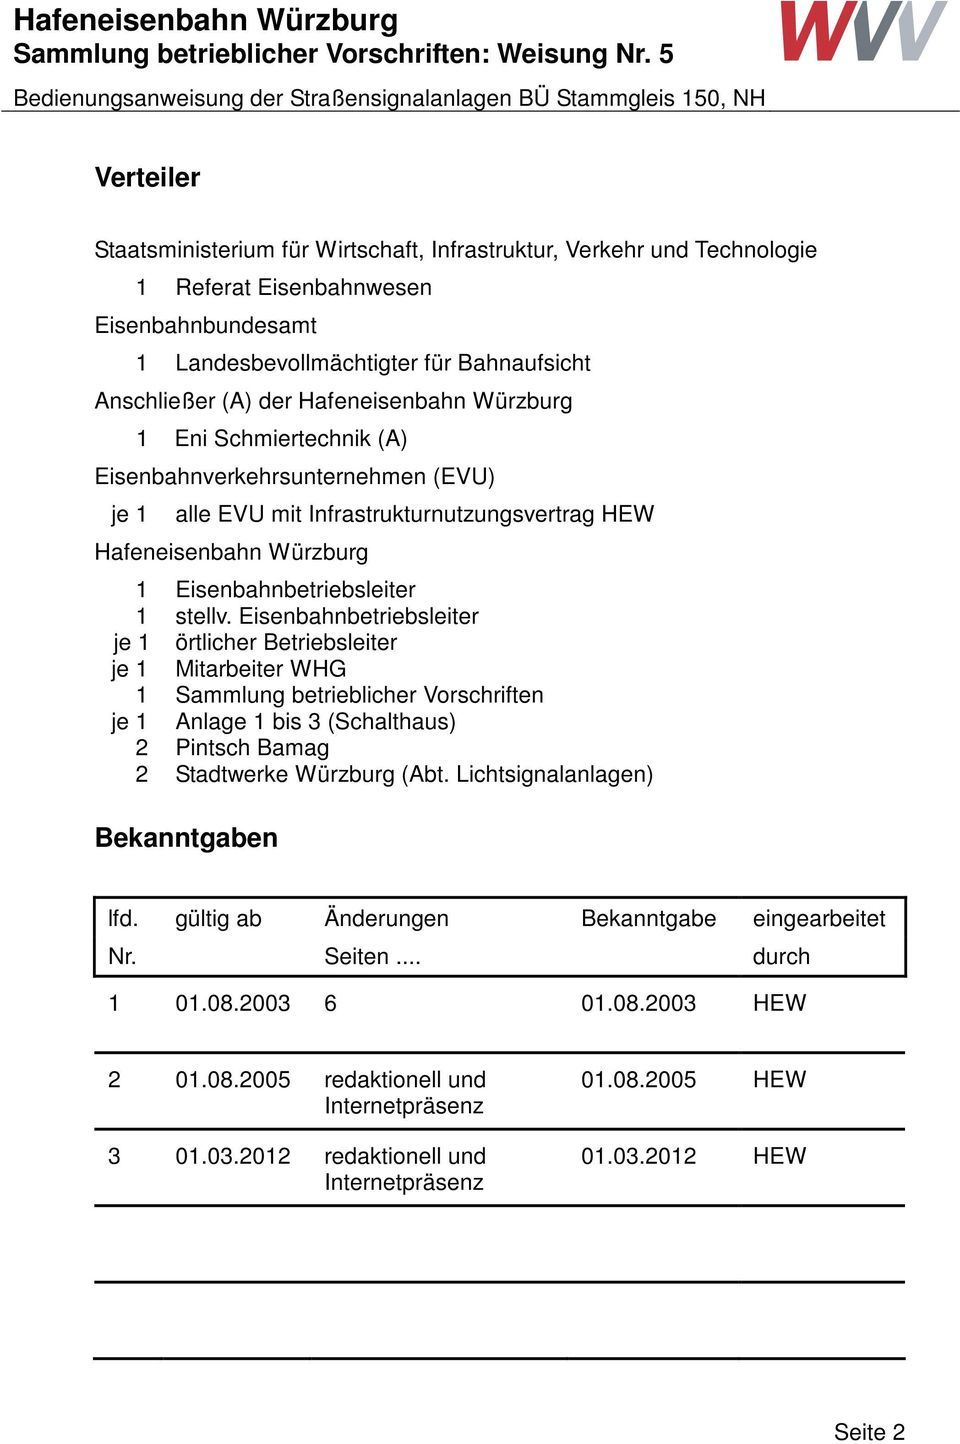 Eisenbahnbetriebsleiter je 1 örtlicher Betriebsleiter je 1 Mitarbeiter WHG 1 Sammlung betrieblicher Vorschriften je 1 Anlage 1 bis 3 (Schalthaus) 2 Pintsch Bamag 2 Stadtwerke Würzburg (Abt.